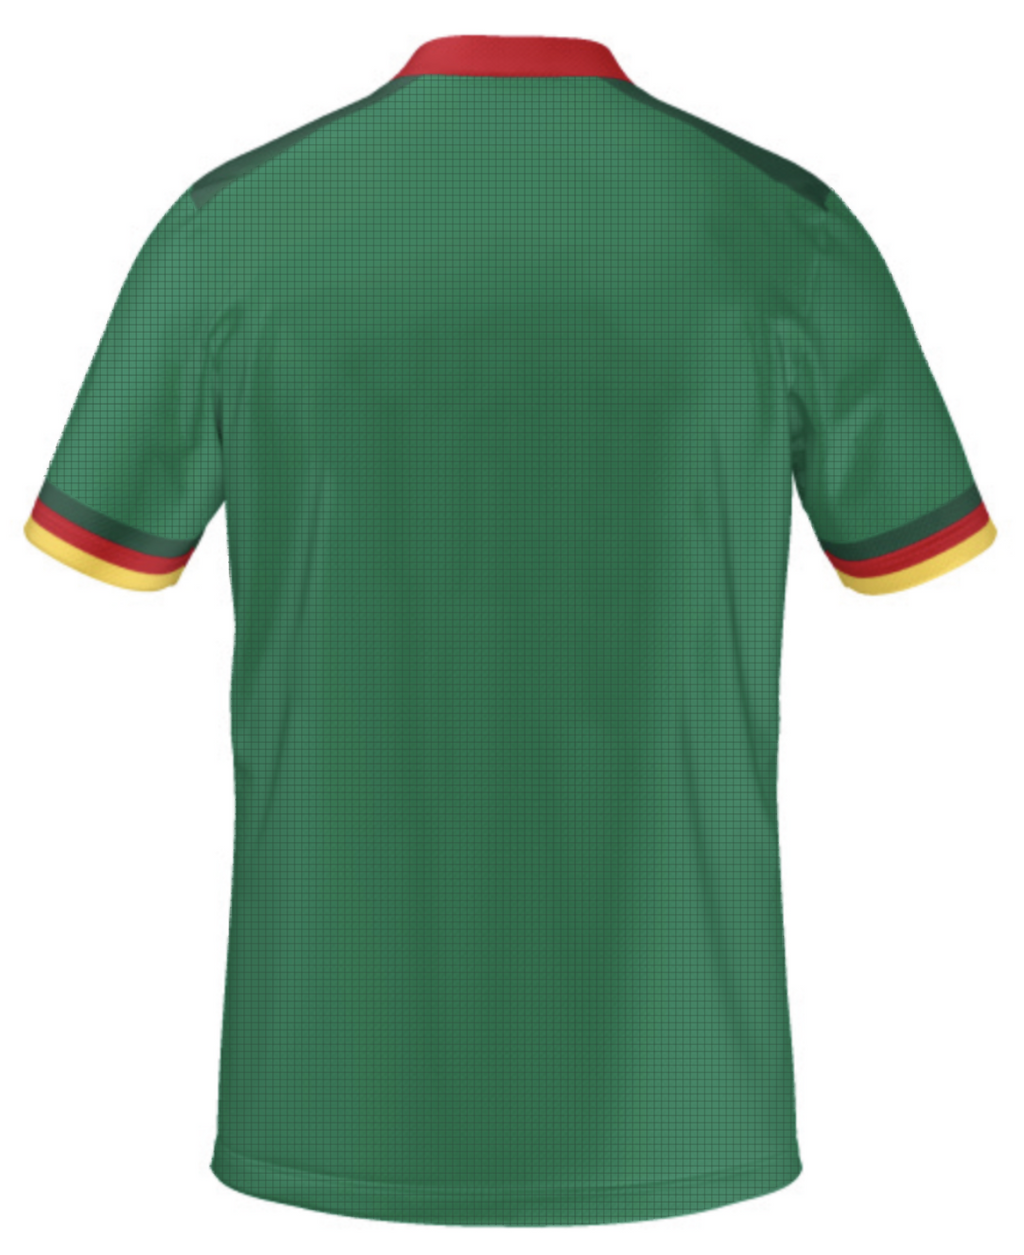 Customizable Official Cameroon FECAFOOT Green Fan Wear Jersey